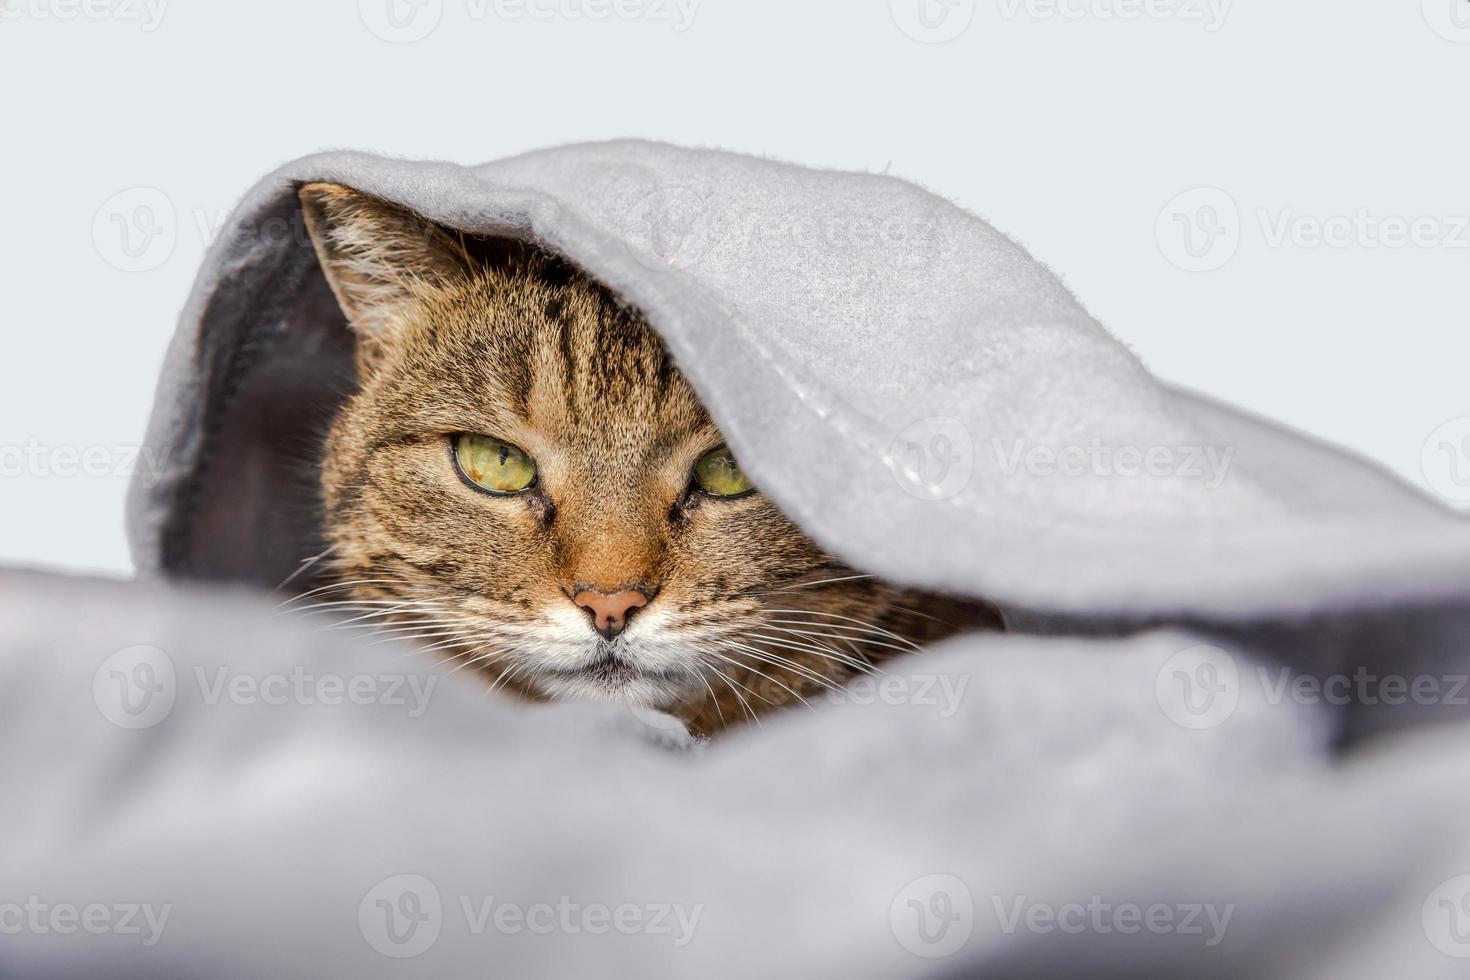 rolig inhemsk tabby katt liggande på soffa under pläd på vit bakgrund. kattunge vilar förvaring värma dölja under filt i kall falla höst vinter- väder. sällskapsdjur djur- liv hygge humör begrepp. foto